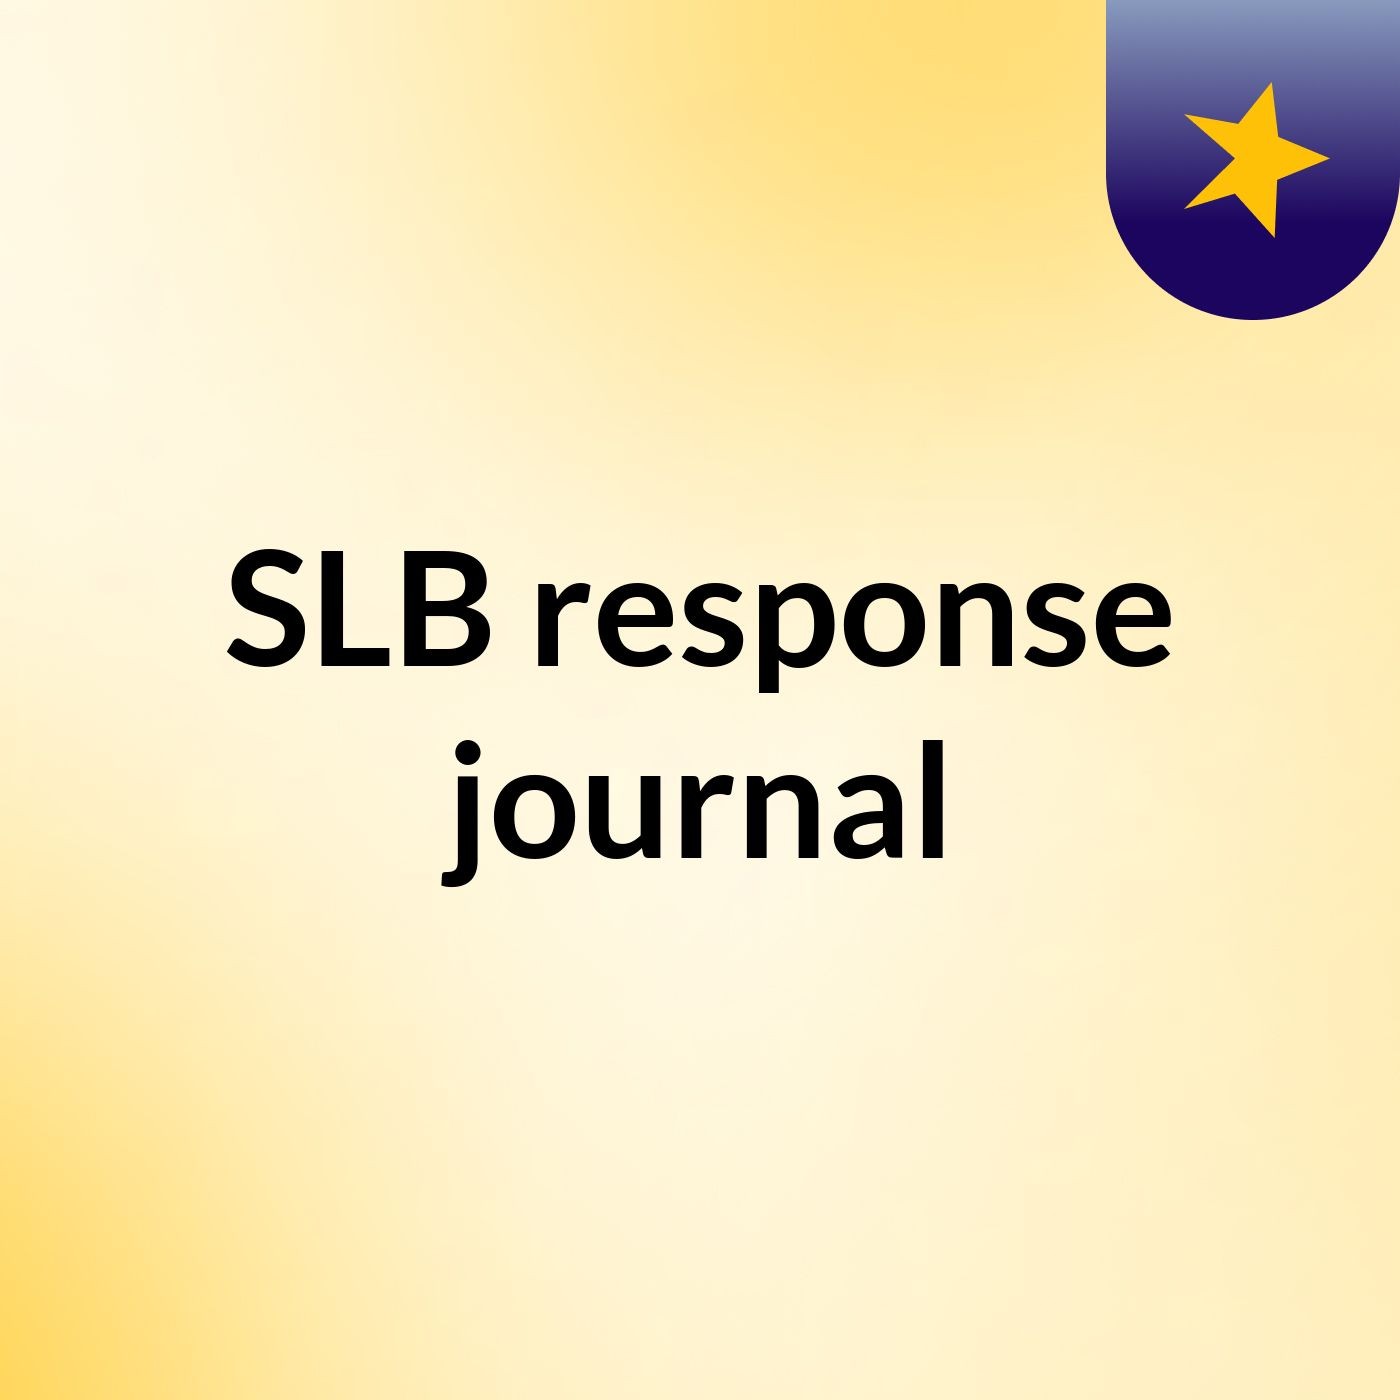 Episode 4 - SLB response journal